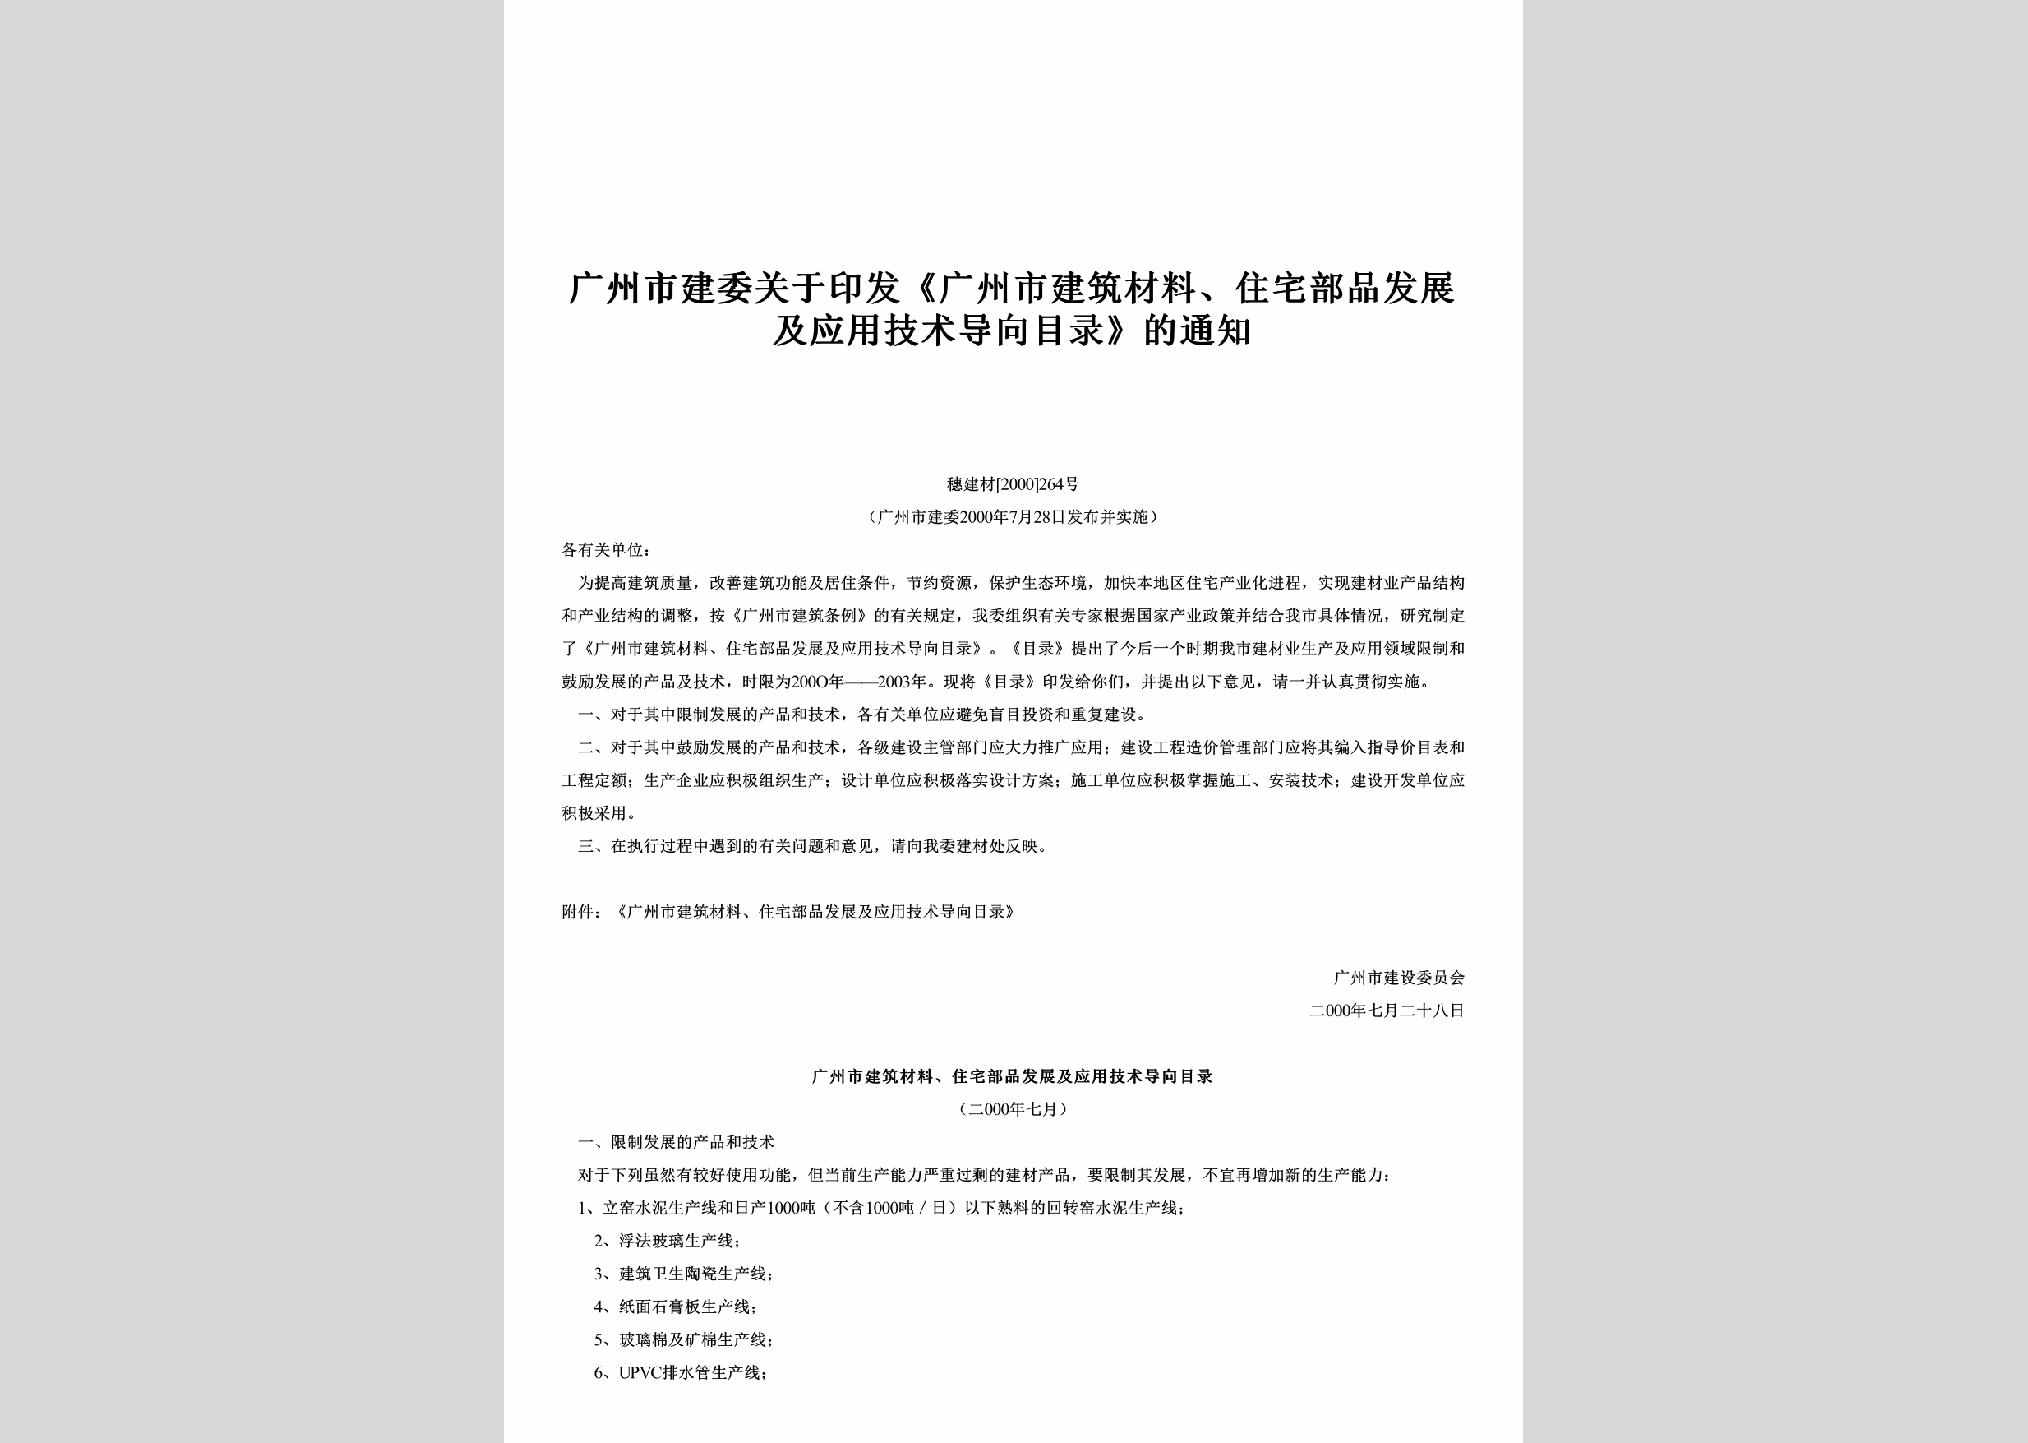 穗建材[2000]264号：关于印发《广州市建筑材料、住宅部品发展及应用技术导向目录》的通知